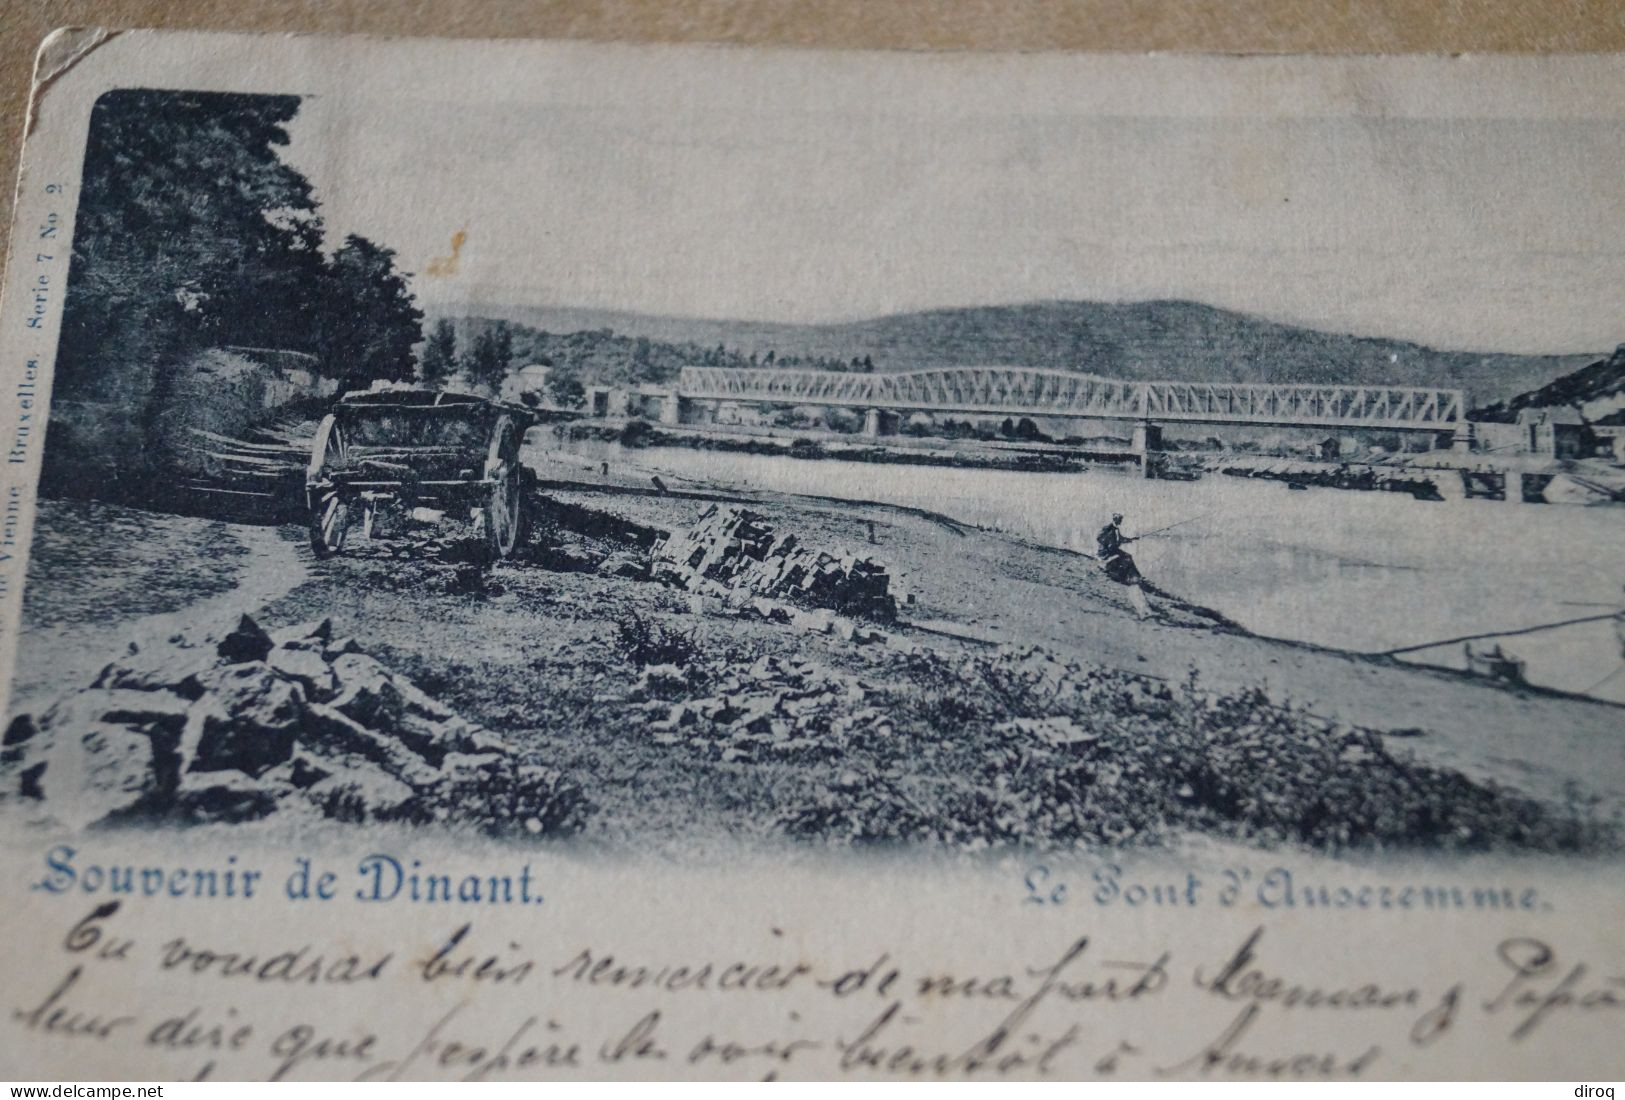 Belle Carte  Ancienne,1899,dinant,le Pont D'Anseremme - Dinant